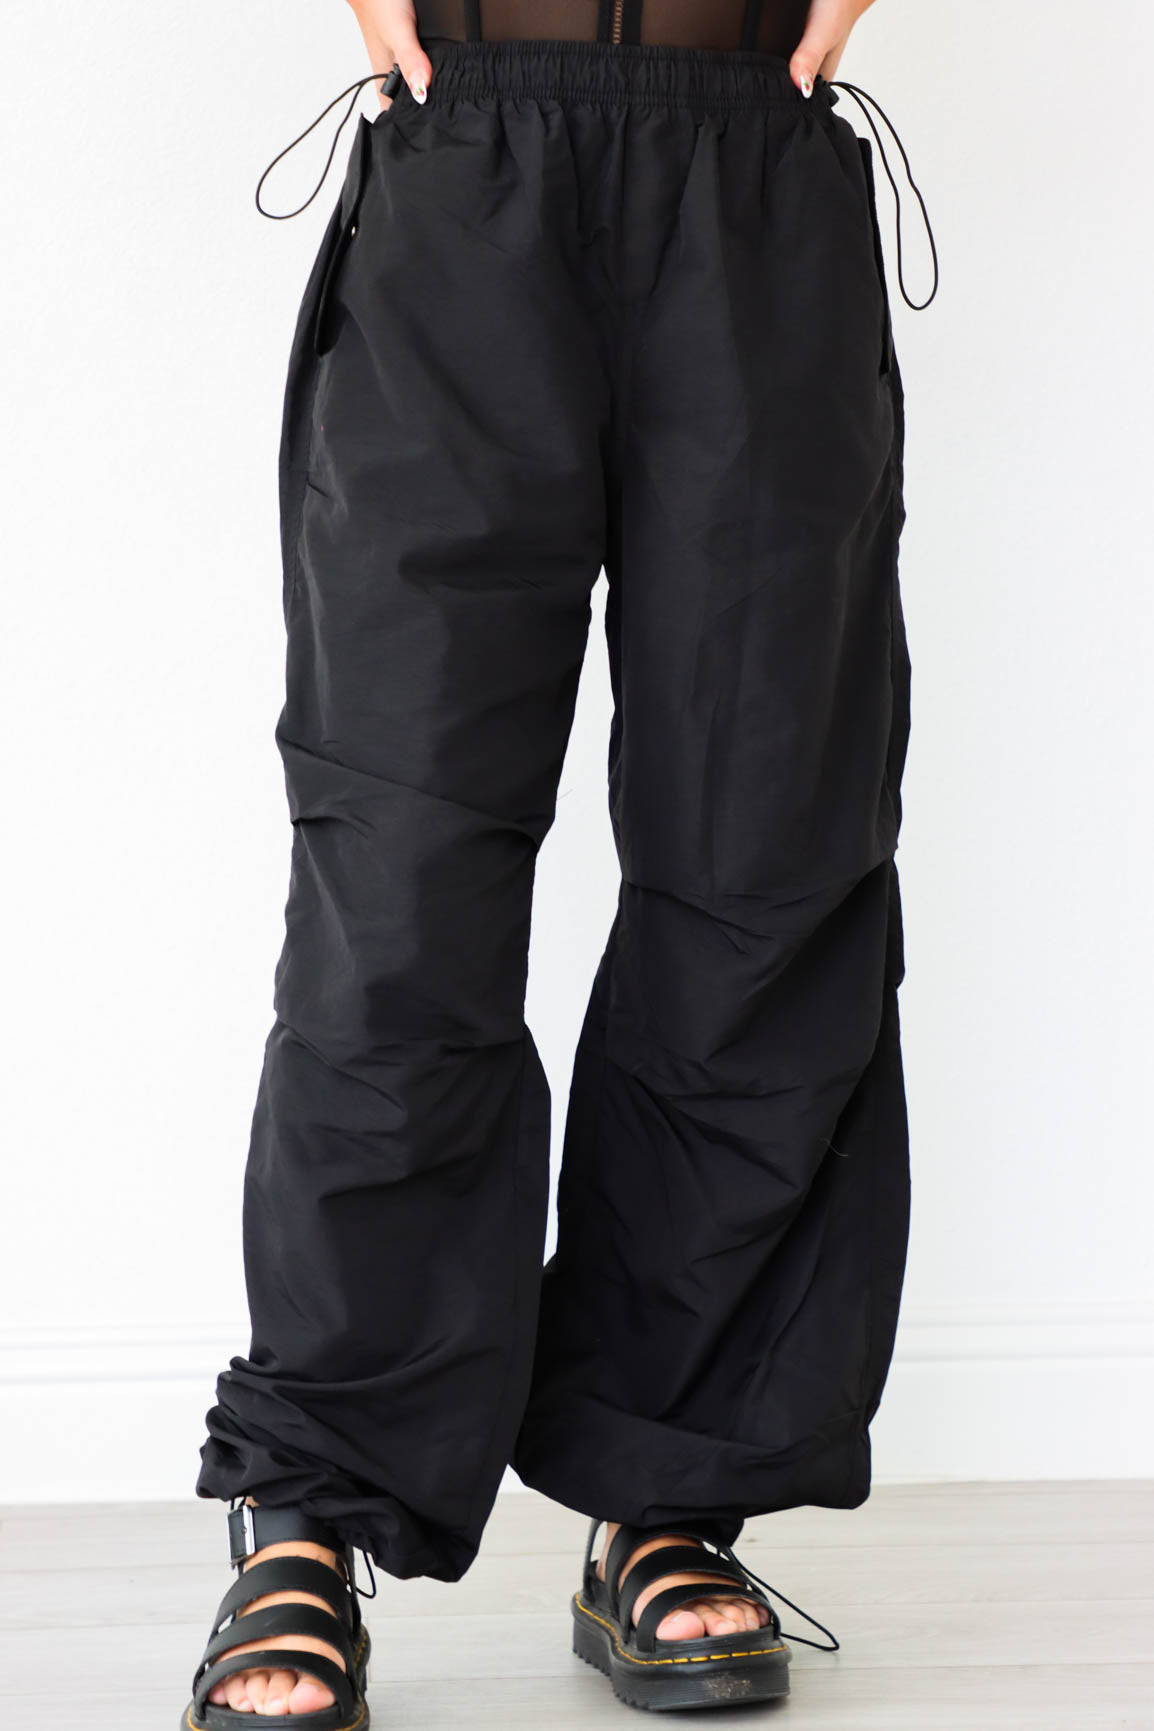 girl wearing black cargo parachute pants